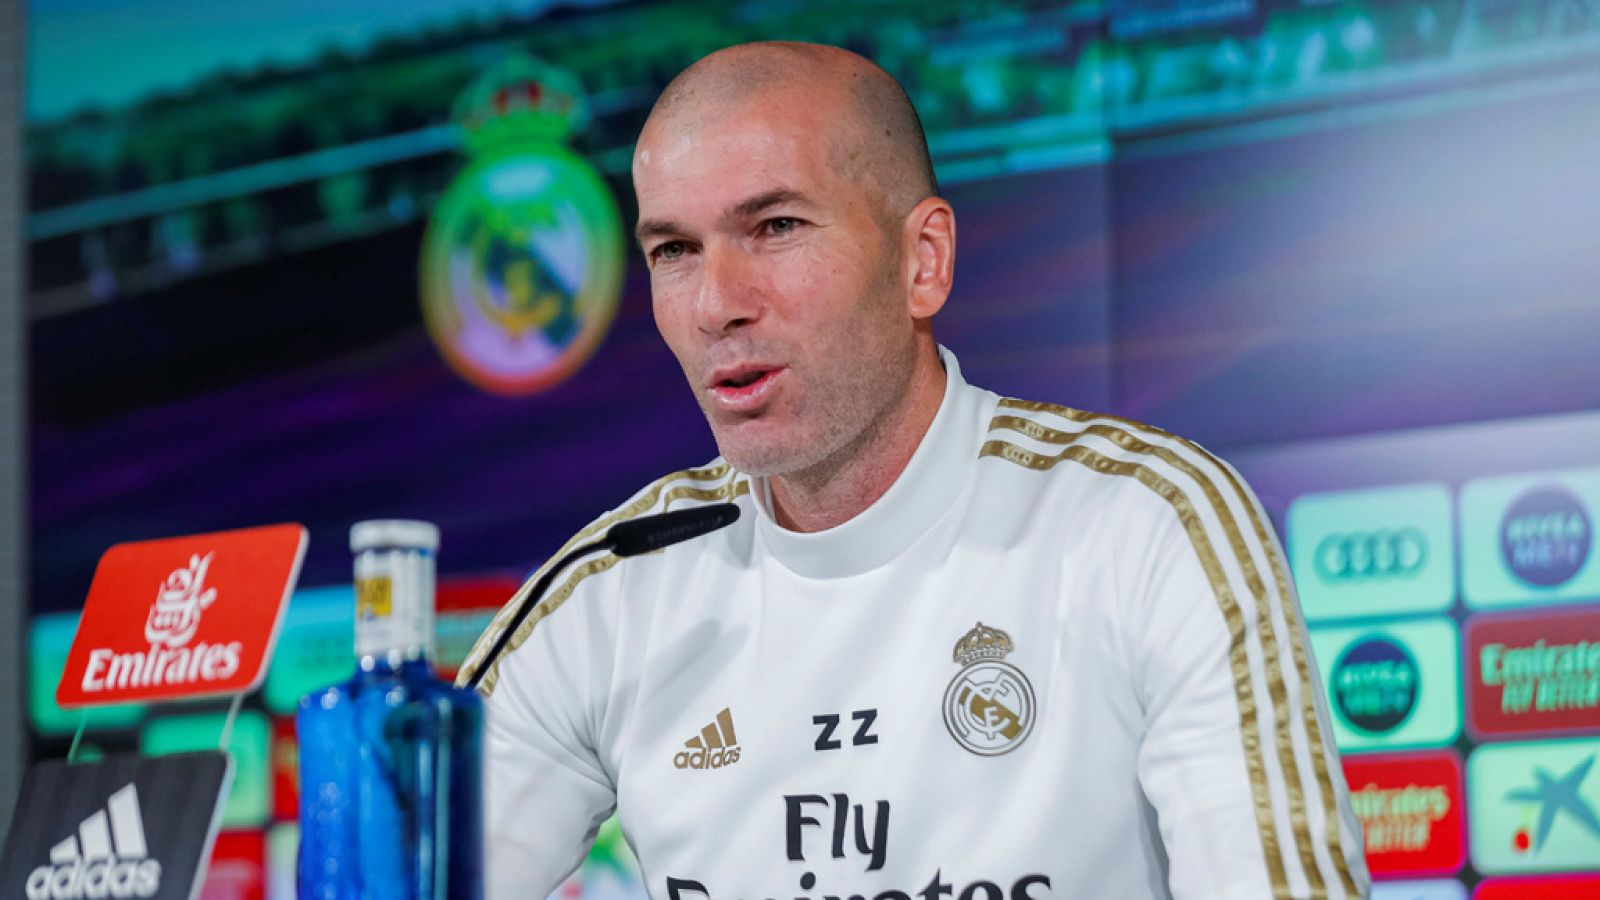 Fútbol - Zidane: "Simeone es uno de los mejores entrenadores" -RTVE.es